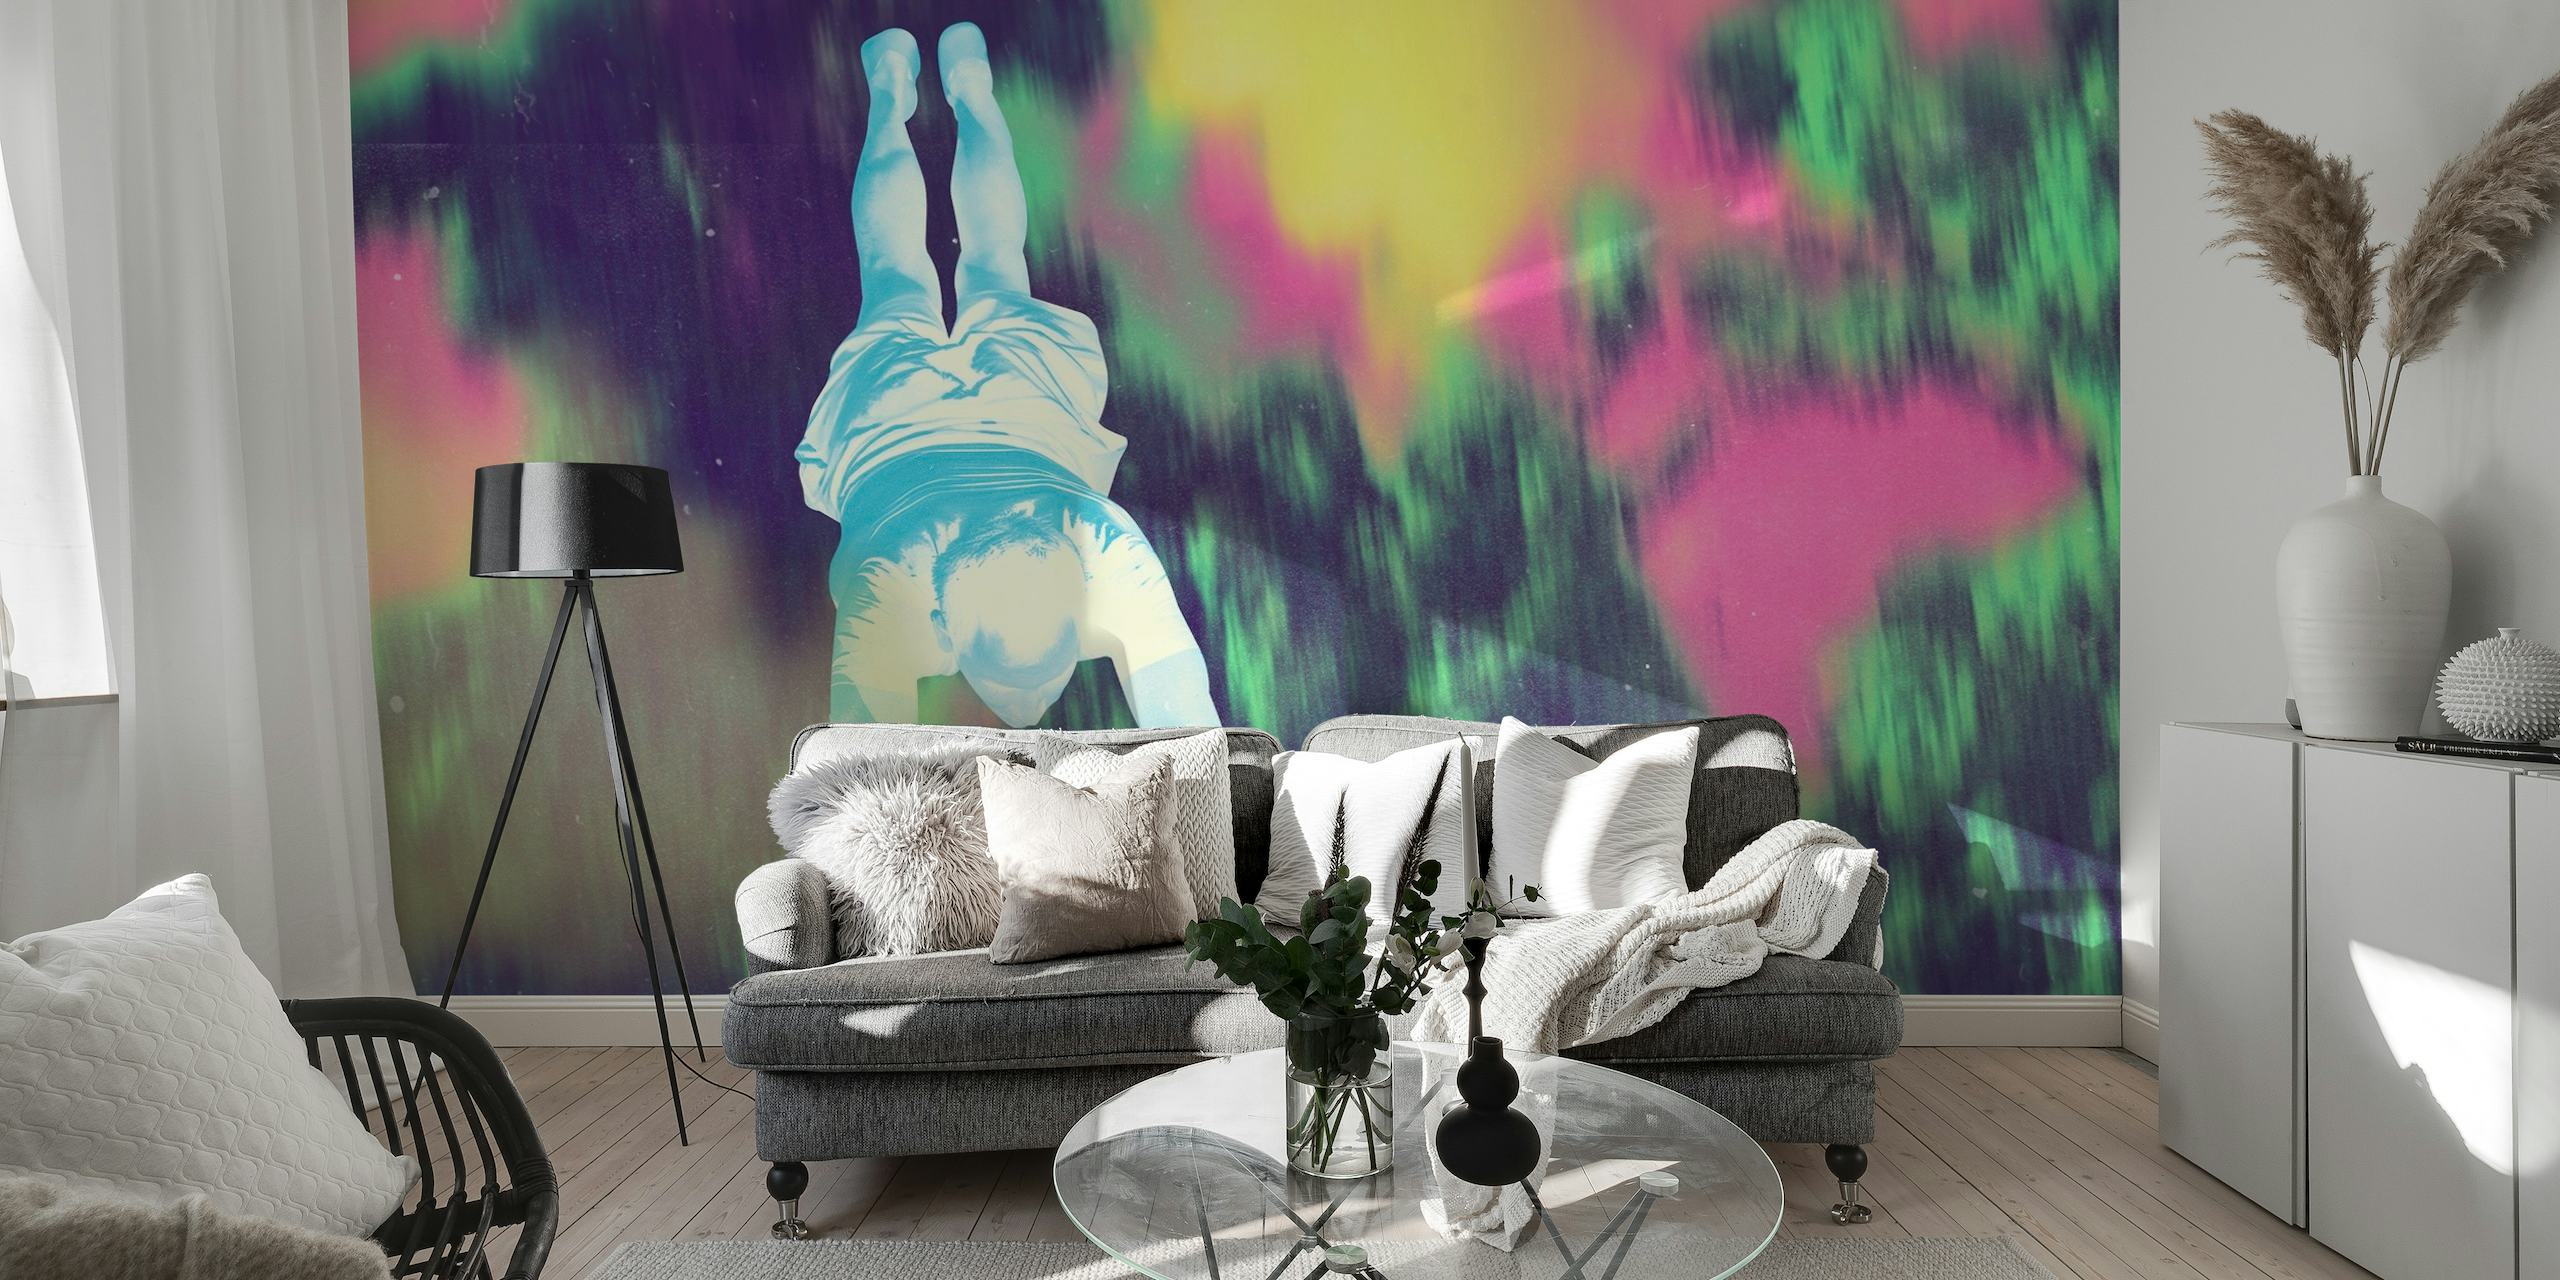 Abstraktes Wandbild im Pop-Art-Stil mit einem farbenfrohen, schmuddeligen Hintergrund und einer zentralen Figur, die die Freiheit symbolisiert.